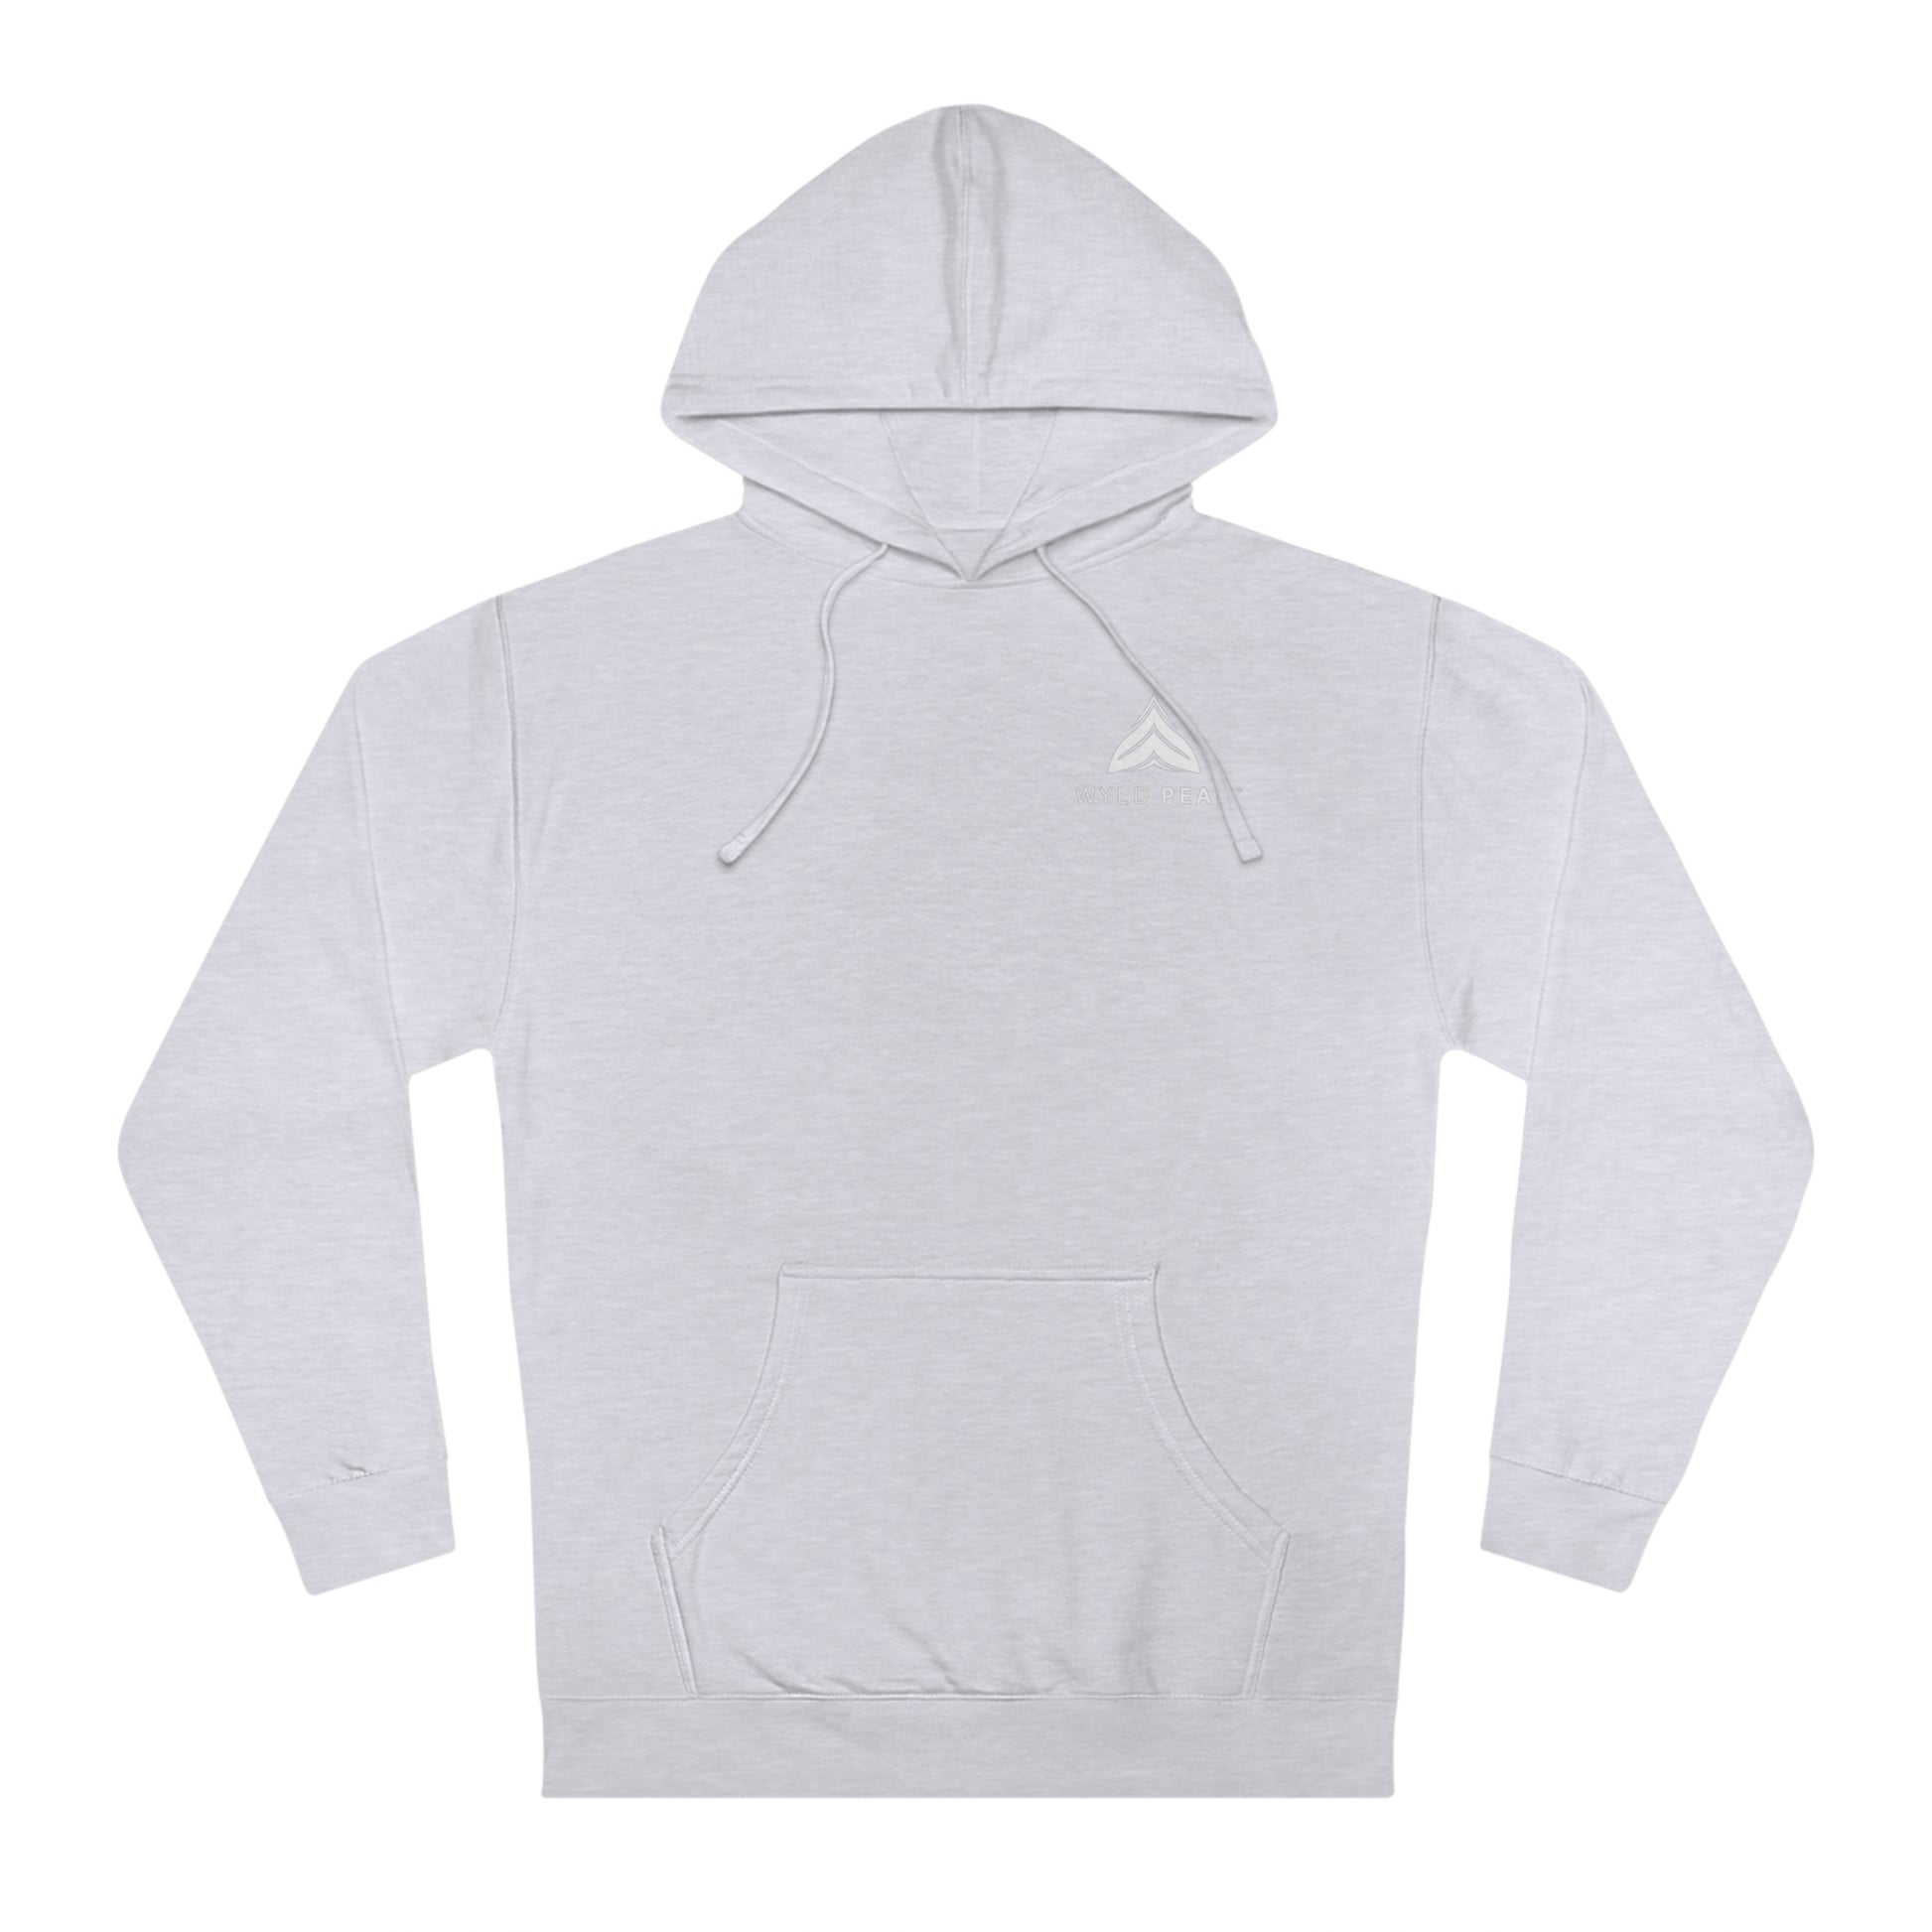 Unisex classic hooded sweatshirt hoodie in grey